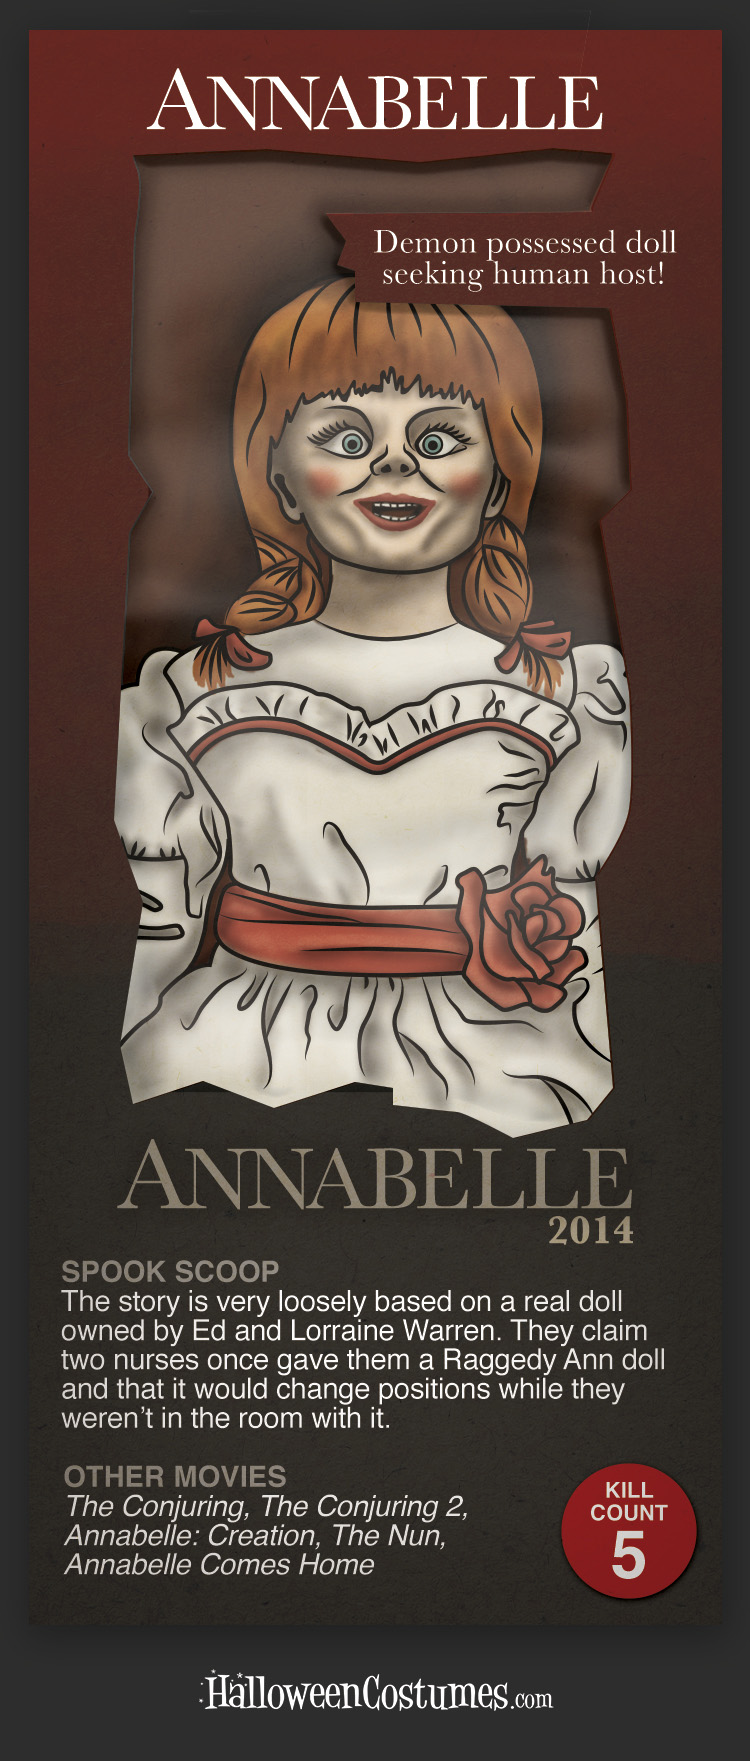 ANNABELLE - ANNABELLE (2014)